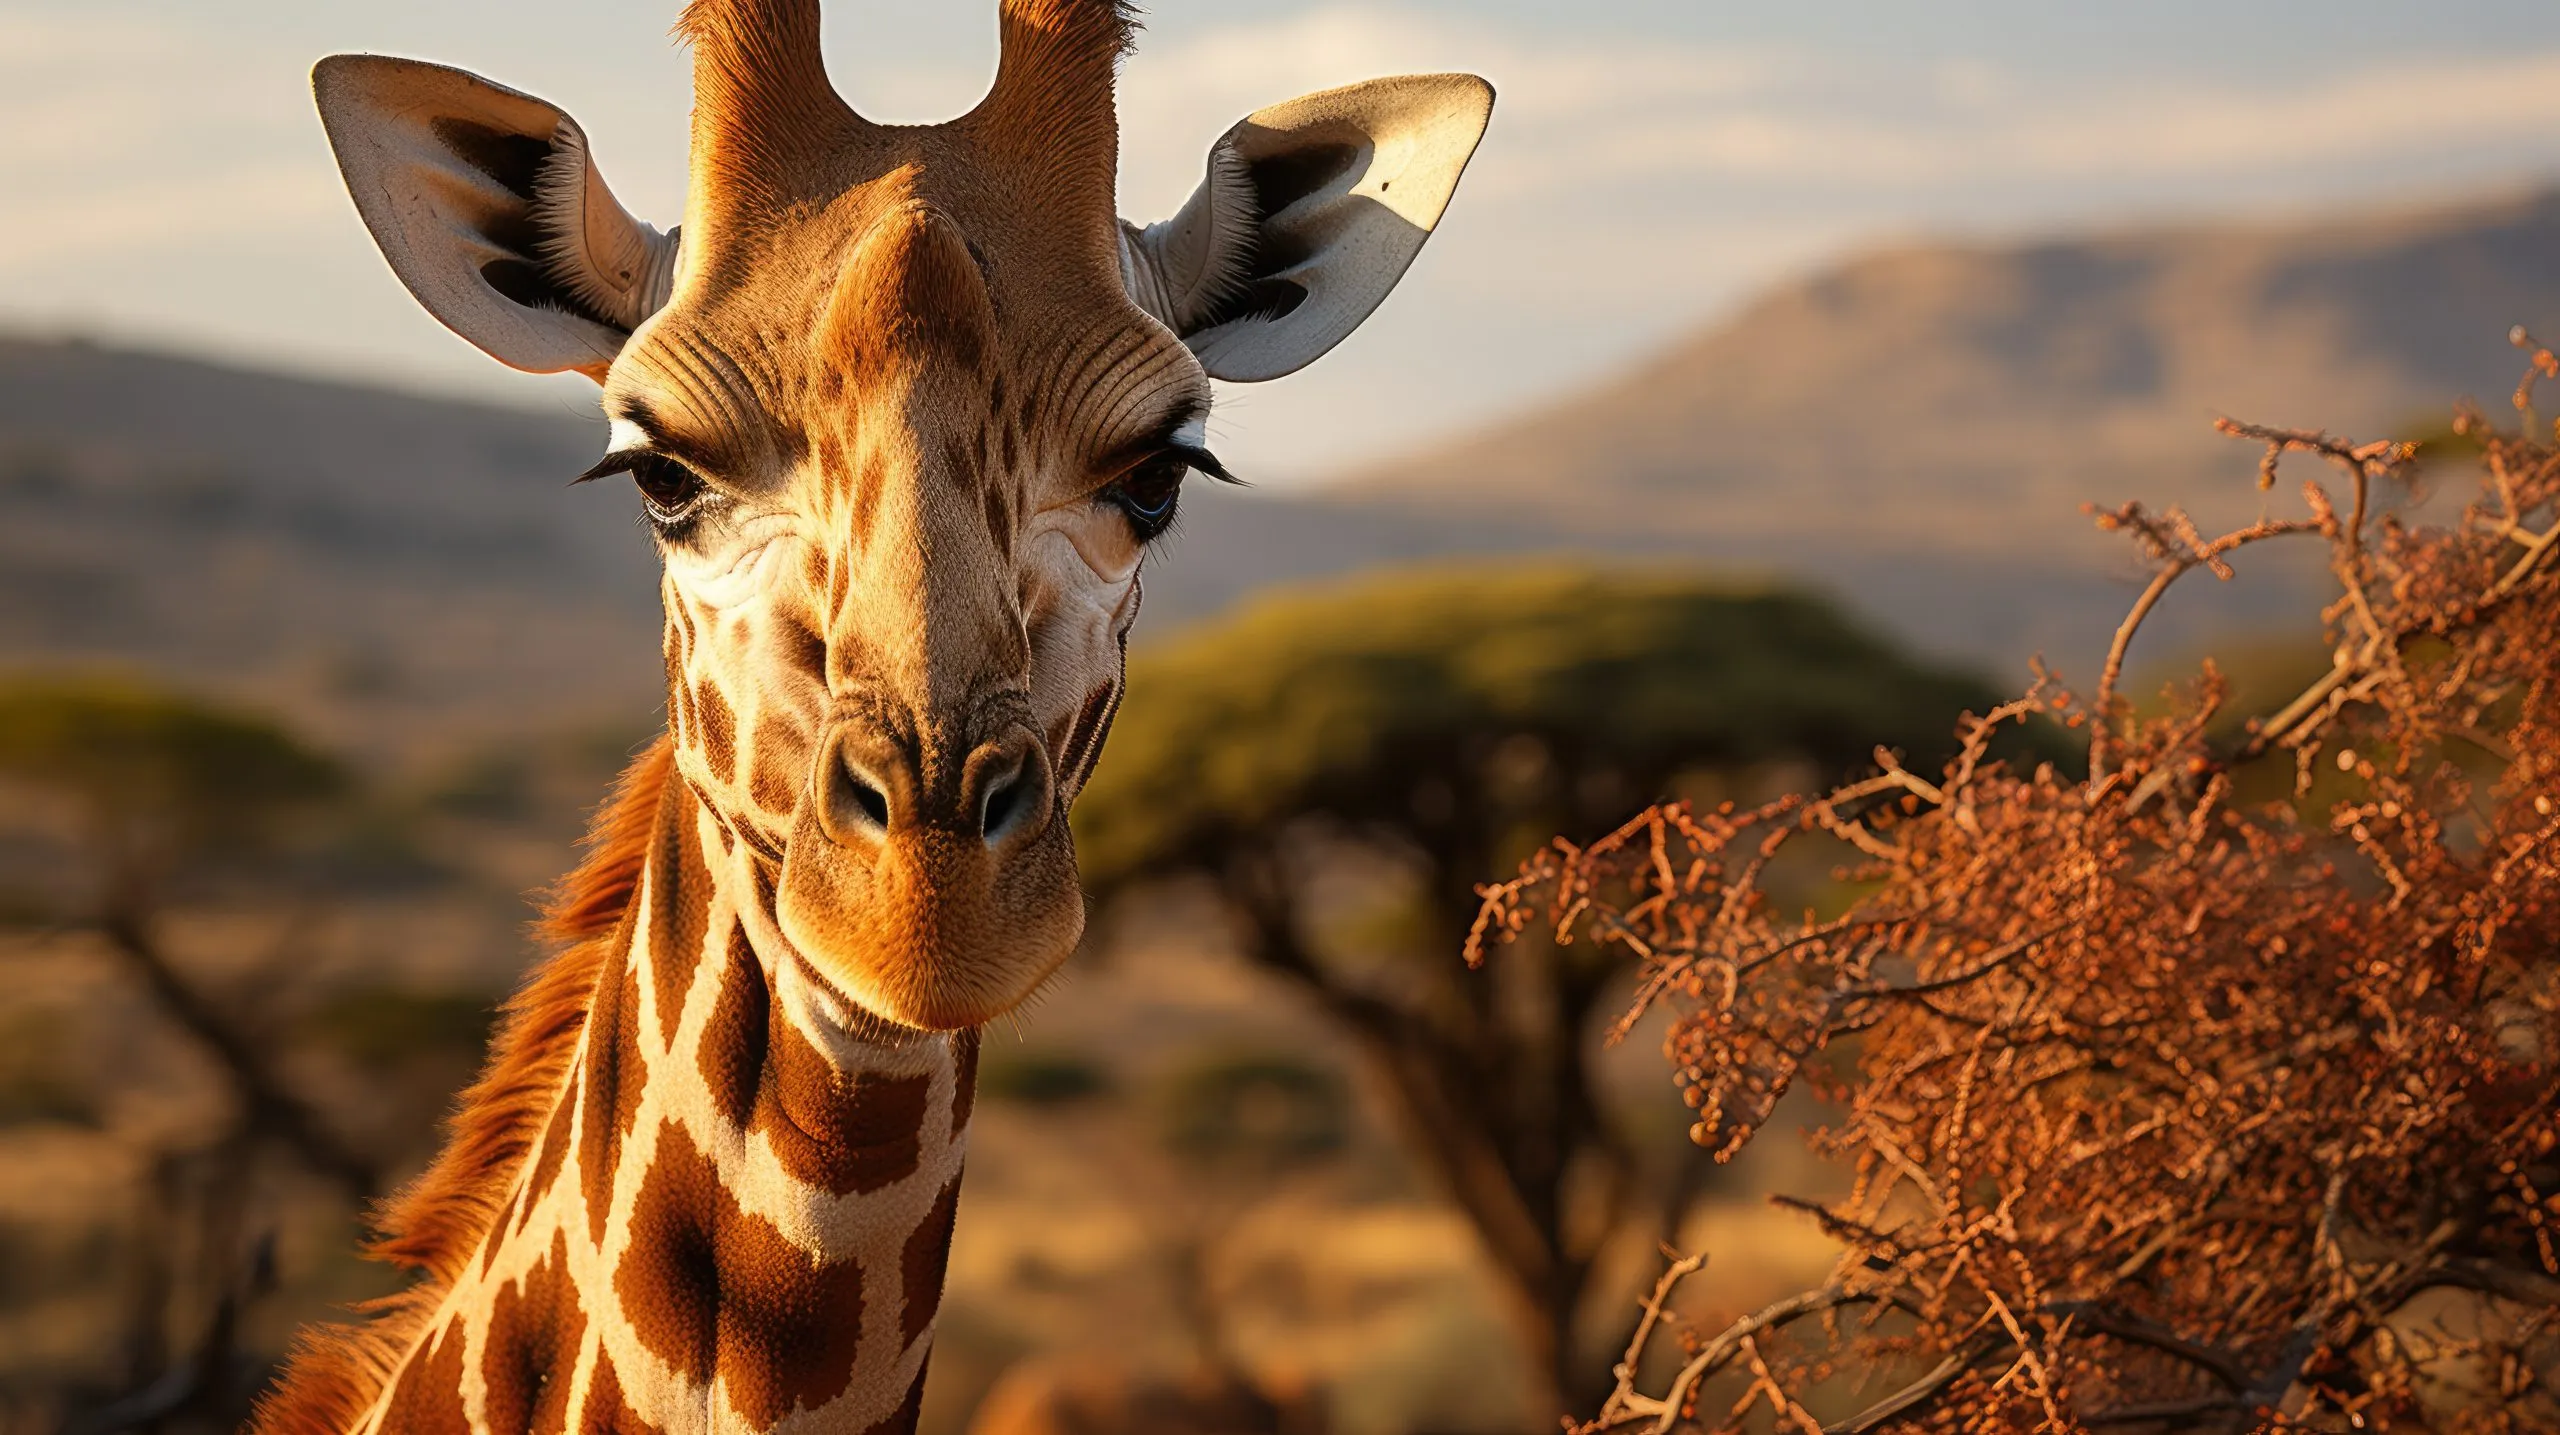 En retikulert sjiraff (Giraffa camelopardalis reticulata) beiter på de øverste grenene av et akasietre i Samburu nasjonalreservat i Kenya, og den lange halsen og den mønstrede pelsen gjør seg godt i det afrikanske lyset.